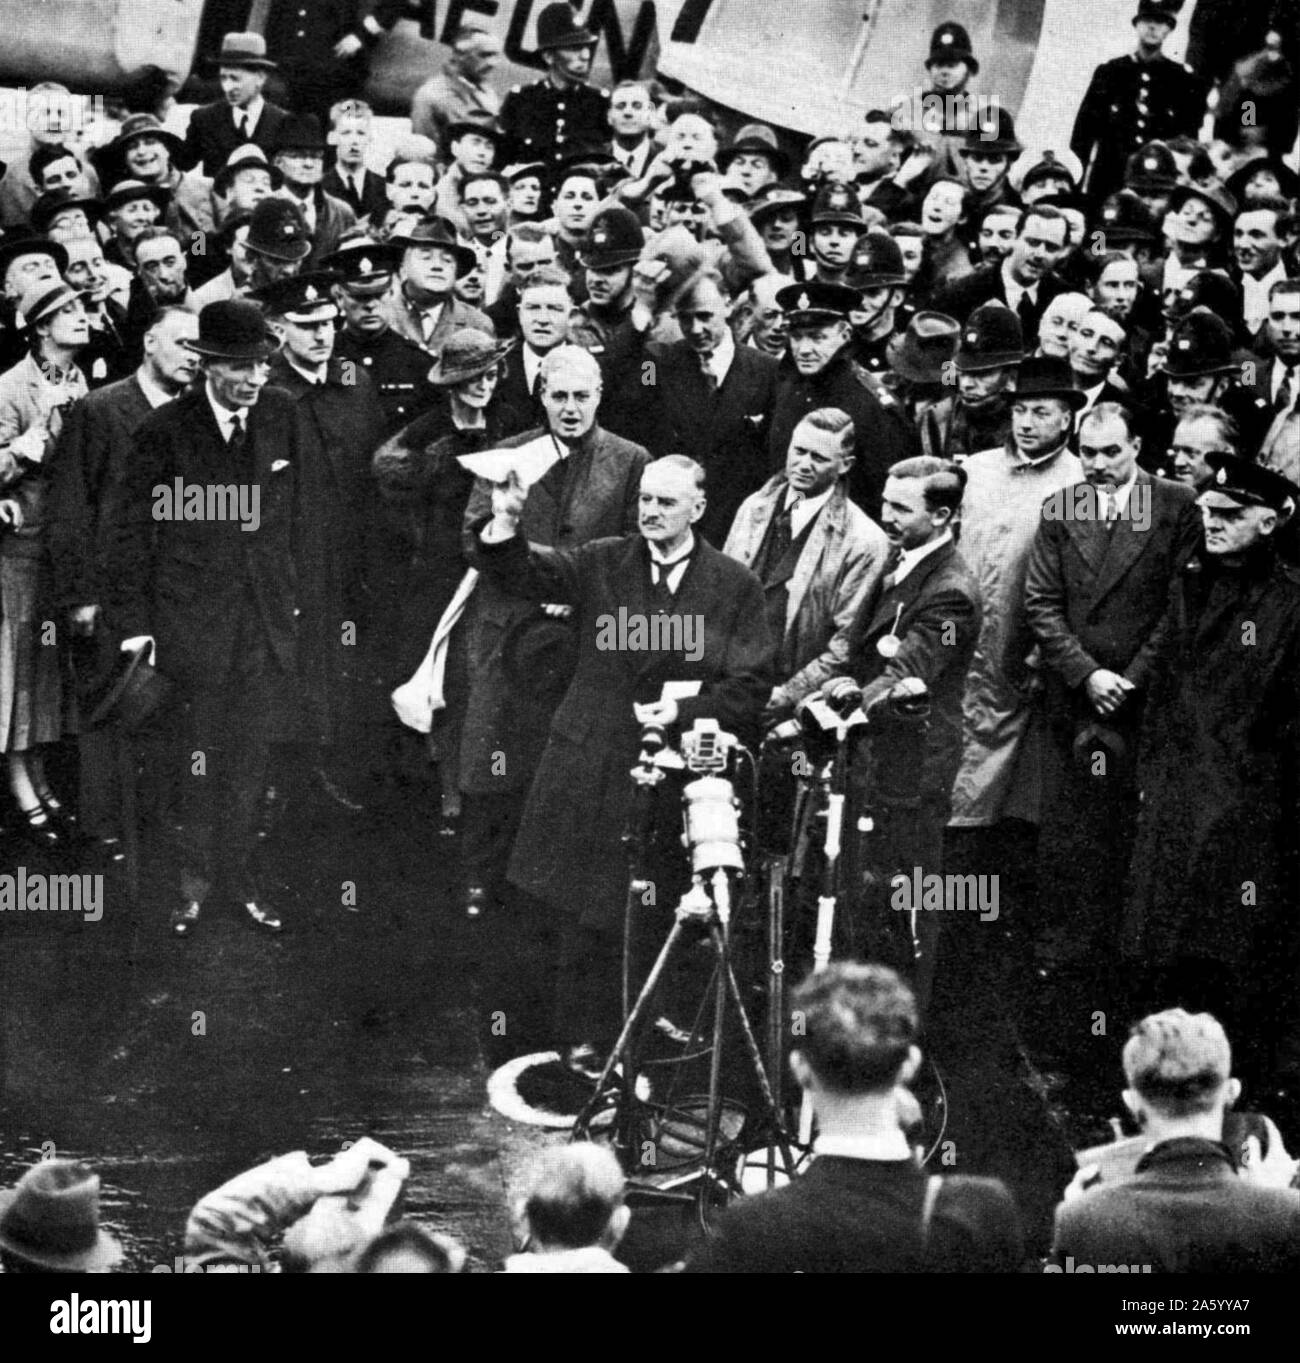 Arthur Neville Chamberlain (1869 - 9 novembre 1940) homme politique conservateur britannique qui a servi comme Premier Ministre 1937 à mai 1940. Chamberlain arrive en Grande-Bretagne après la signature des accords de Munich en 1938, reconnaissant la région des Sudètes de la Tchécoslovaquie à l'Allemagne Banque D'Images